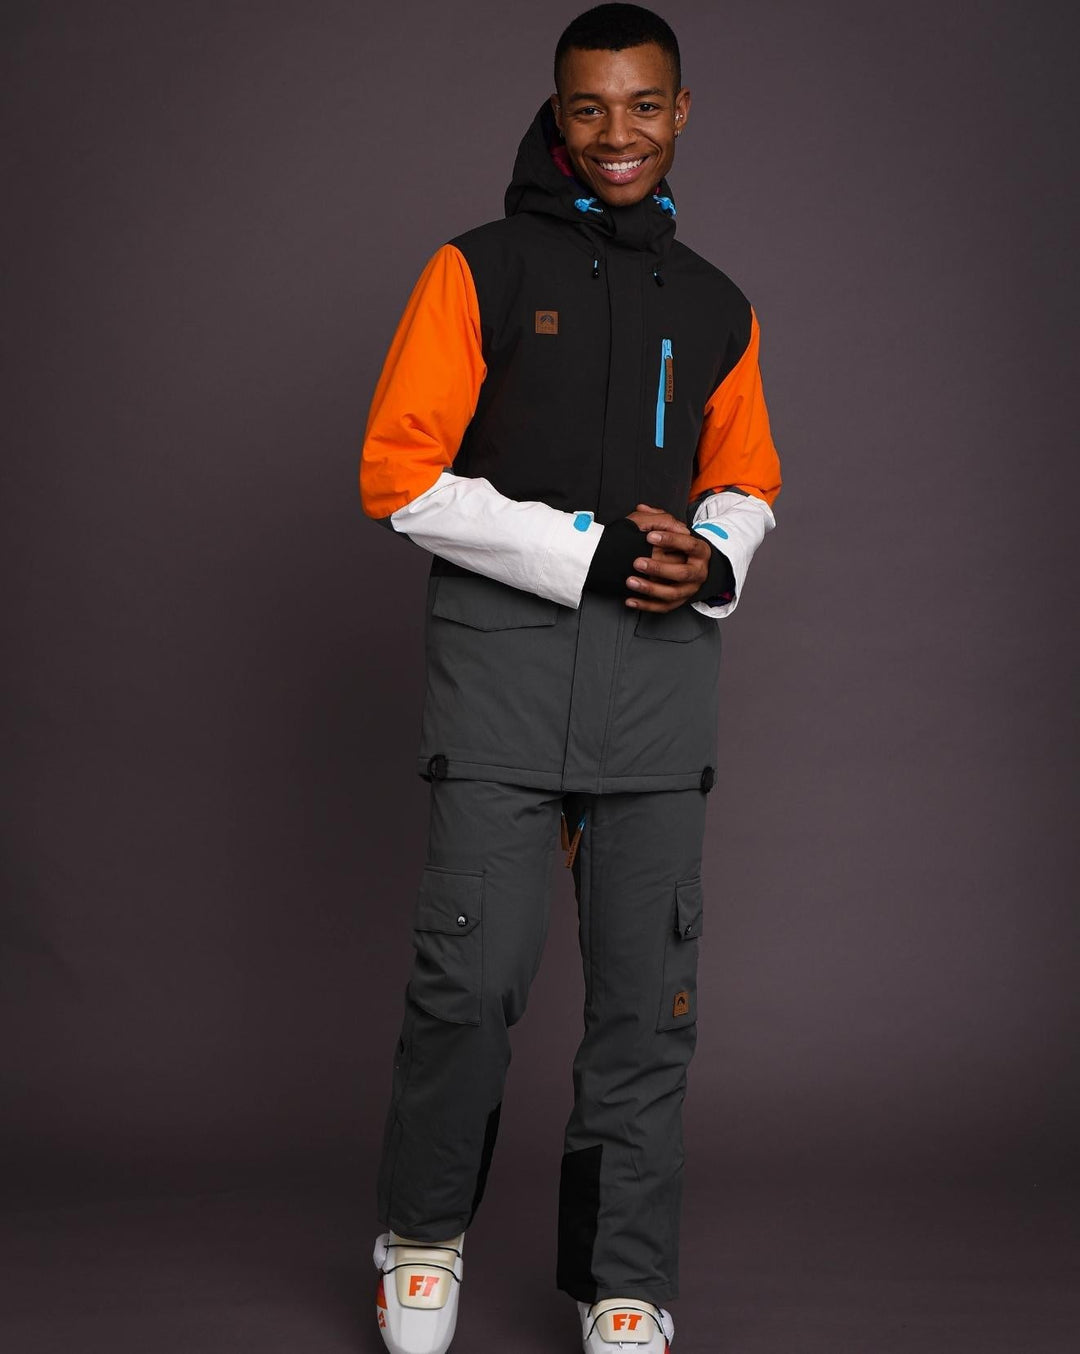 Yeh Man Men's Ski & Snowboard Jacket - Black, Grey & Orange